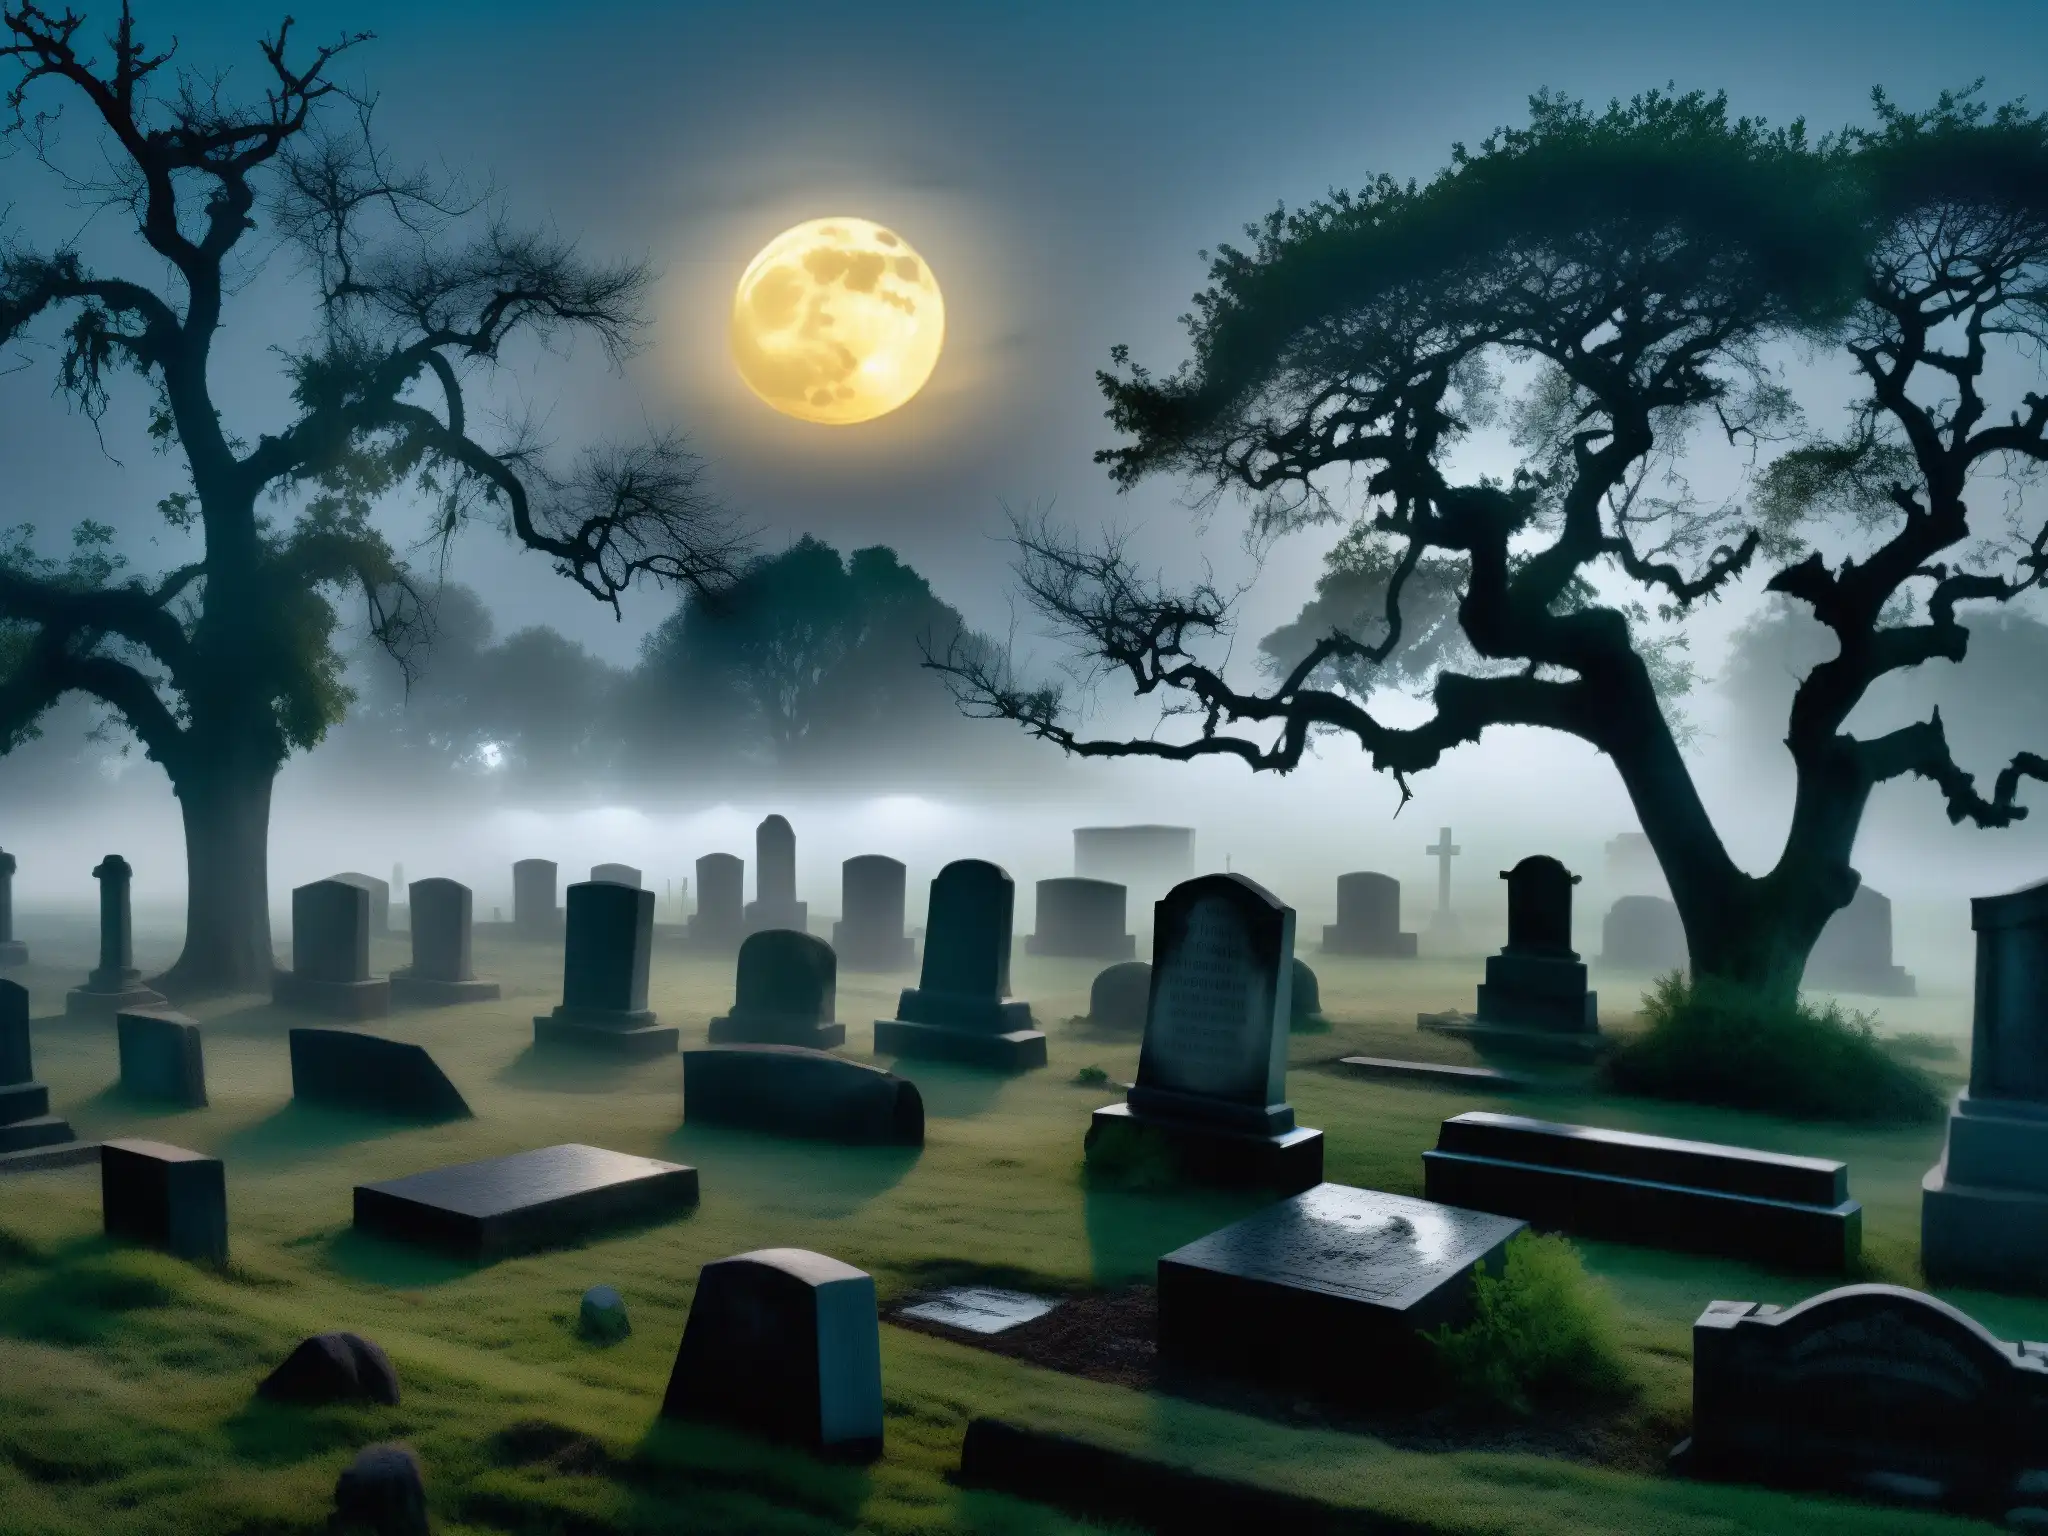 Un cementerio misterioso y enigmático de noche, con tumbas antiguas entre la neblina, árboles retorcidos y una luna etérea